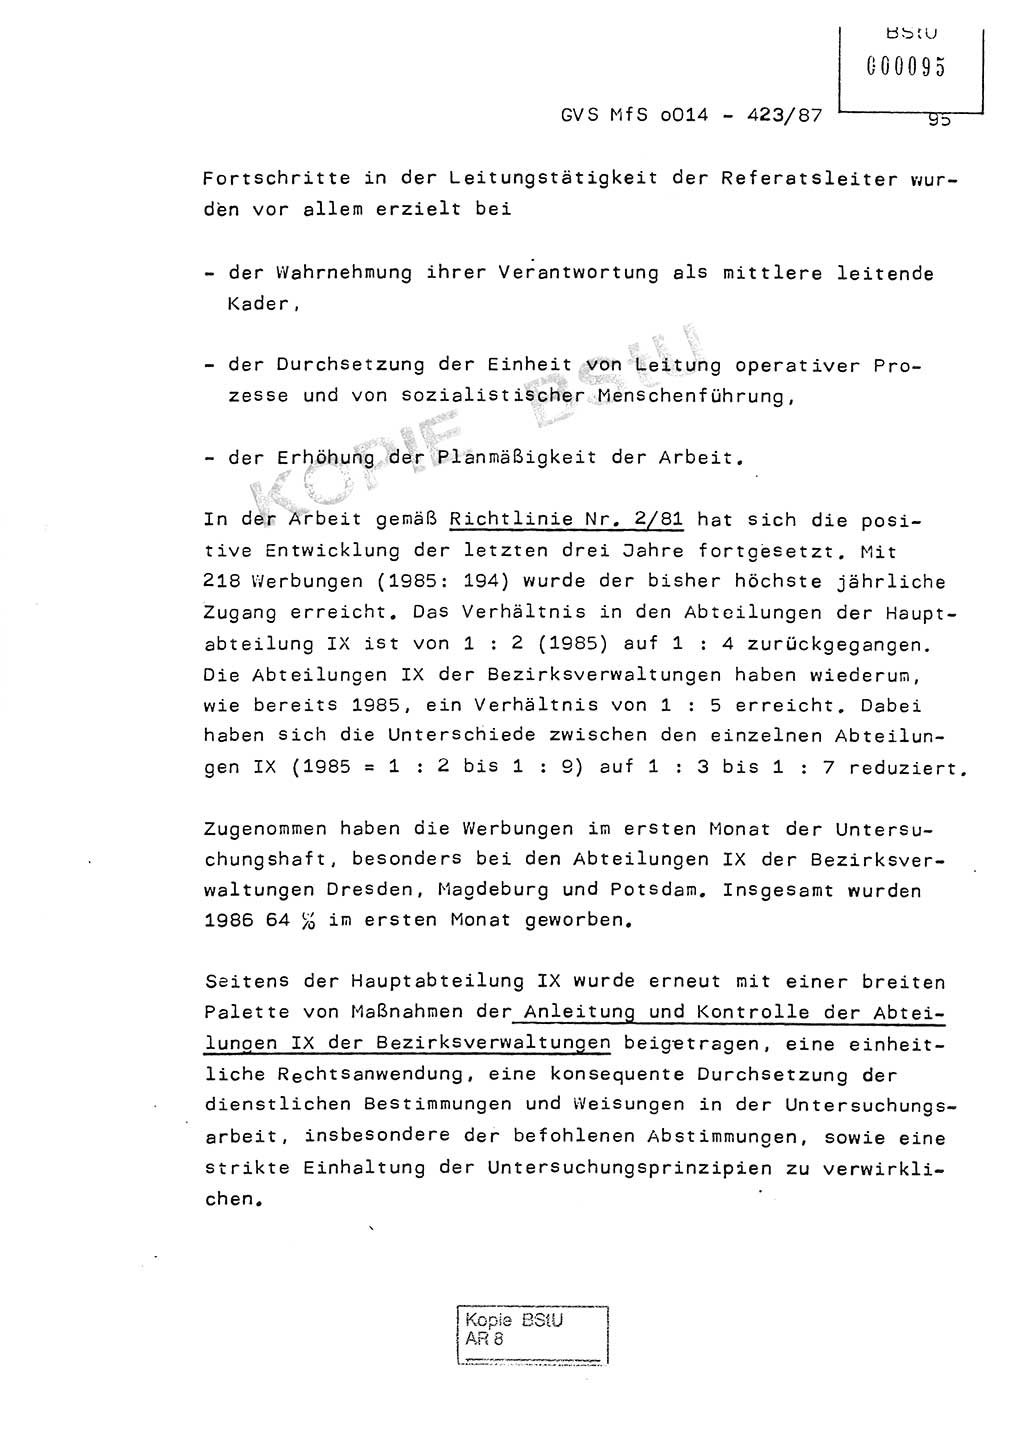 Jahresbericht der Hauptabteilung (HA) Ⅸ 1986, Einschätzung der Wirksamkeit der Untersuchungsarbeit im Jahre 1986, Ministerium für Staatssicherheit (MfS) der Deutschen Demokratischen Republik (DDR), Hauptabteilung Ⅸ, Geheime Verschlußsache (GVS) o014-423/87, Berlin 1987, Seite 95 (Einsch. MfS DDR HA Ⅸ GVS o014-423/87 1986, S. 95)